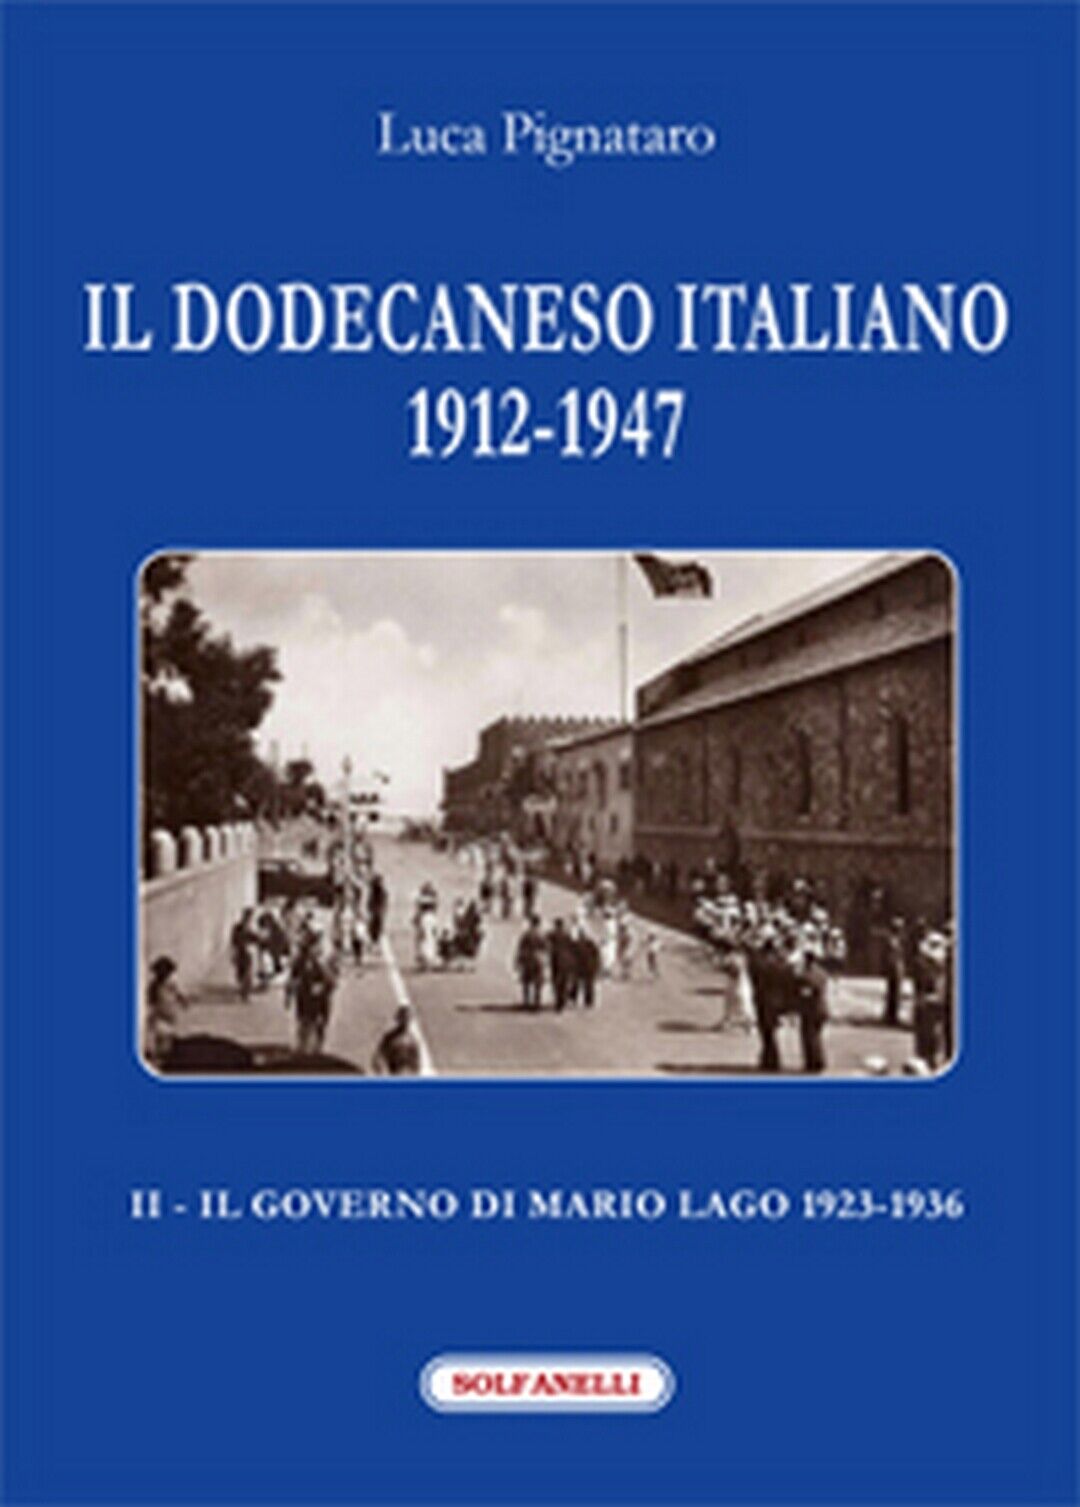 IL DODECANESO ITALIANO 1912-1947. II - Il Governo di Mario Lago 1923-1936 libro usato